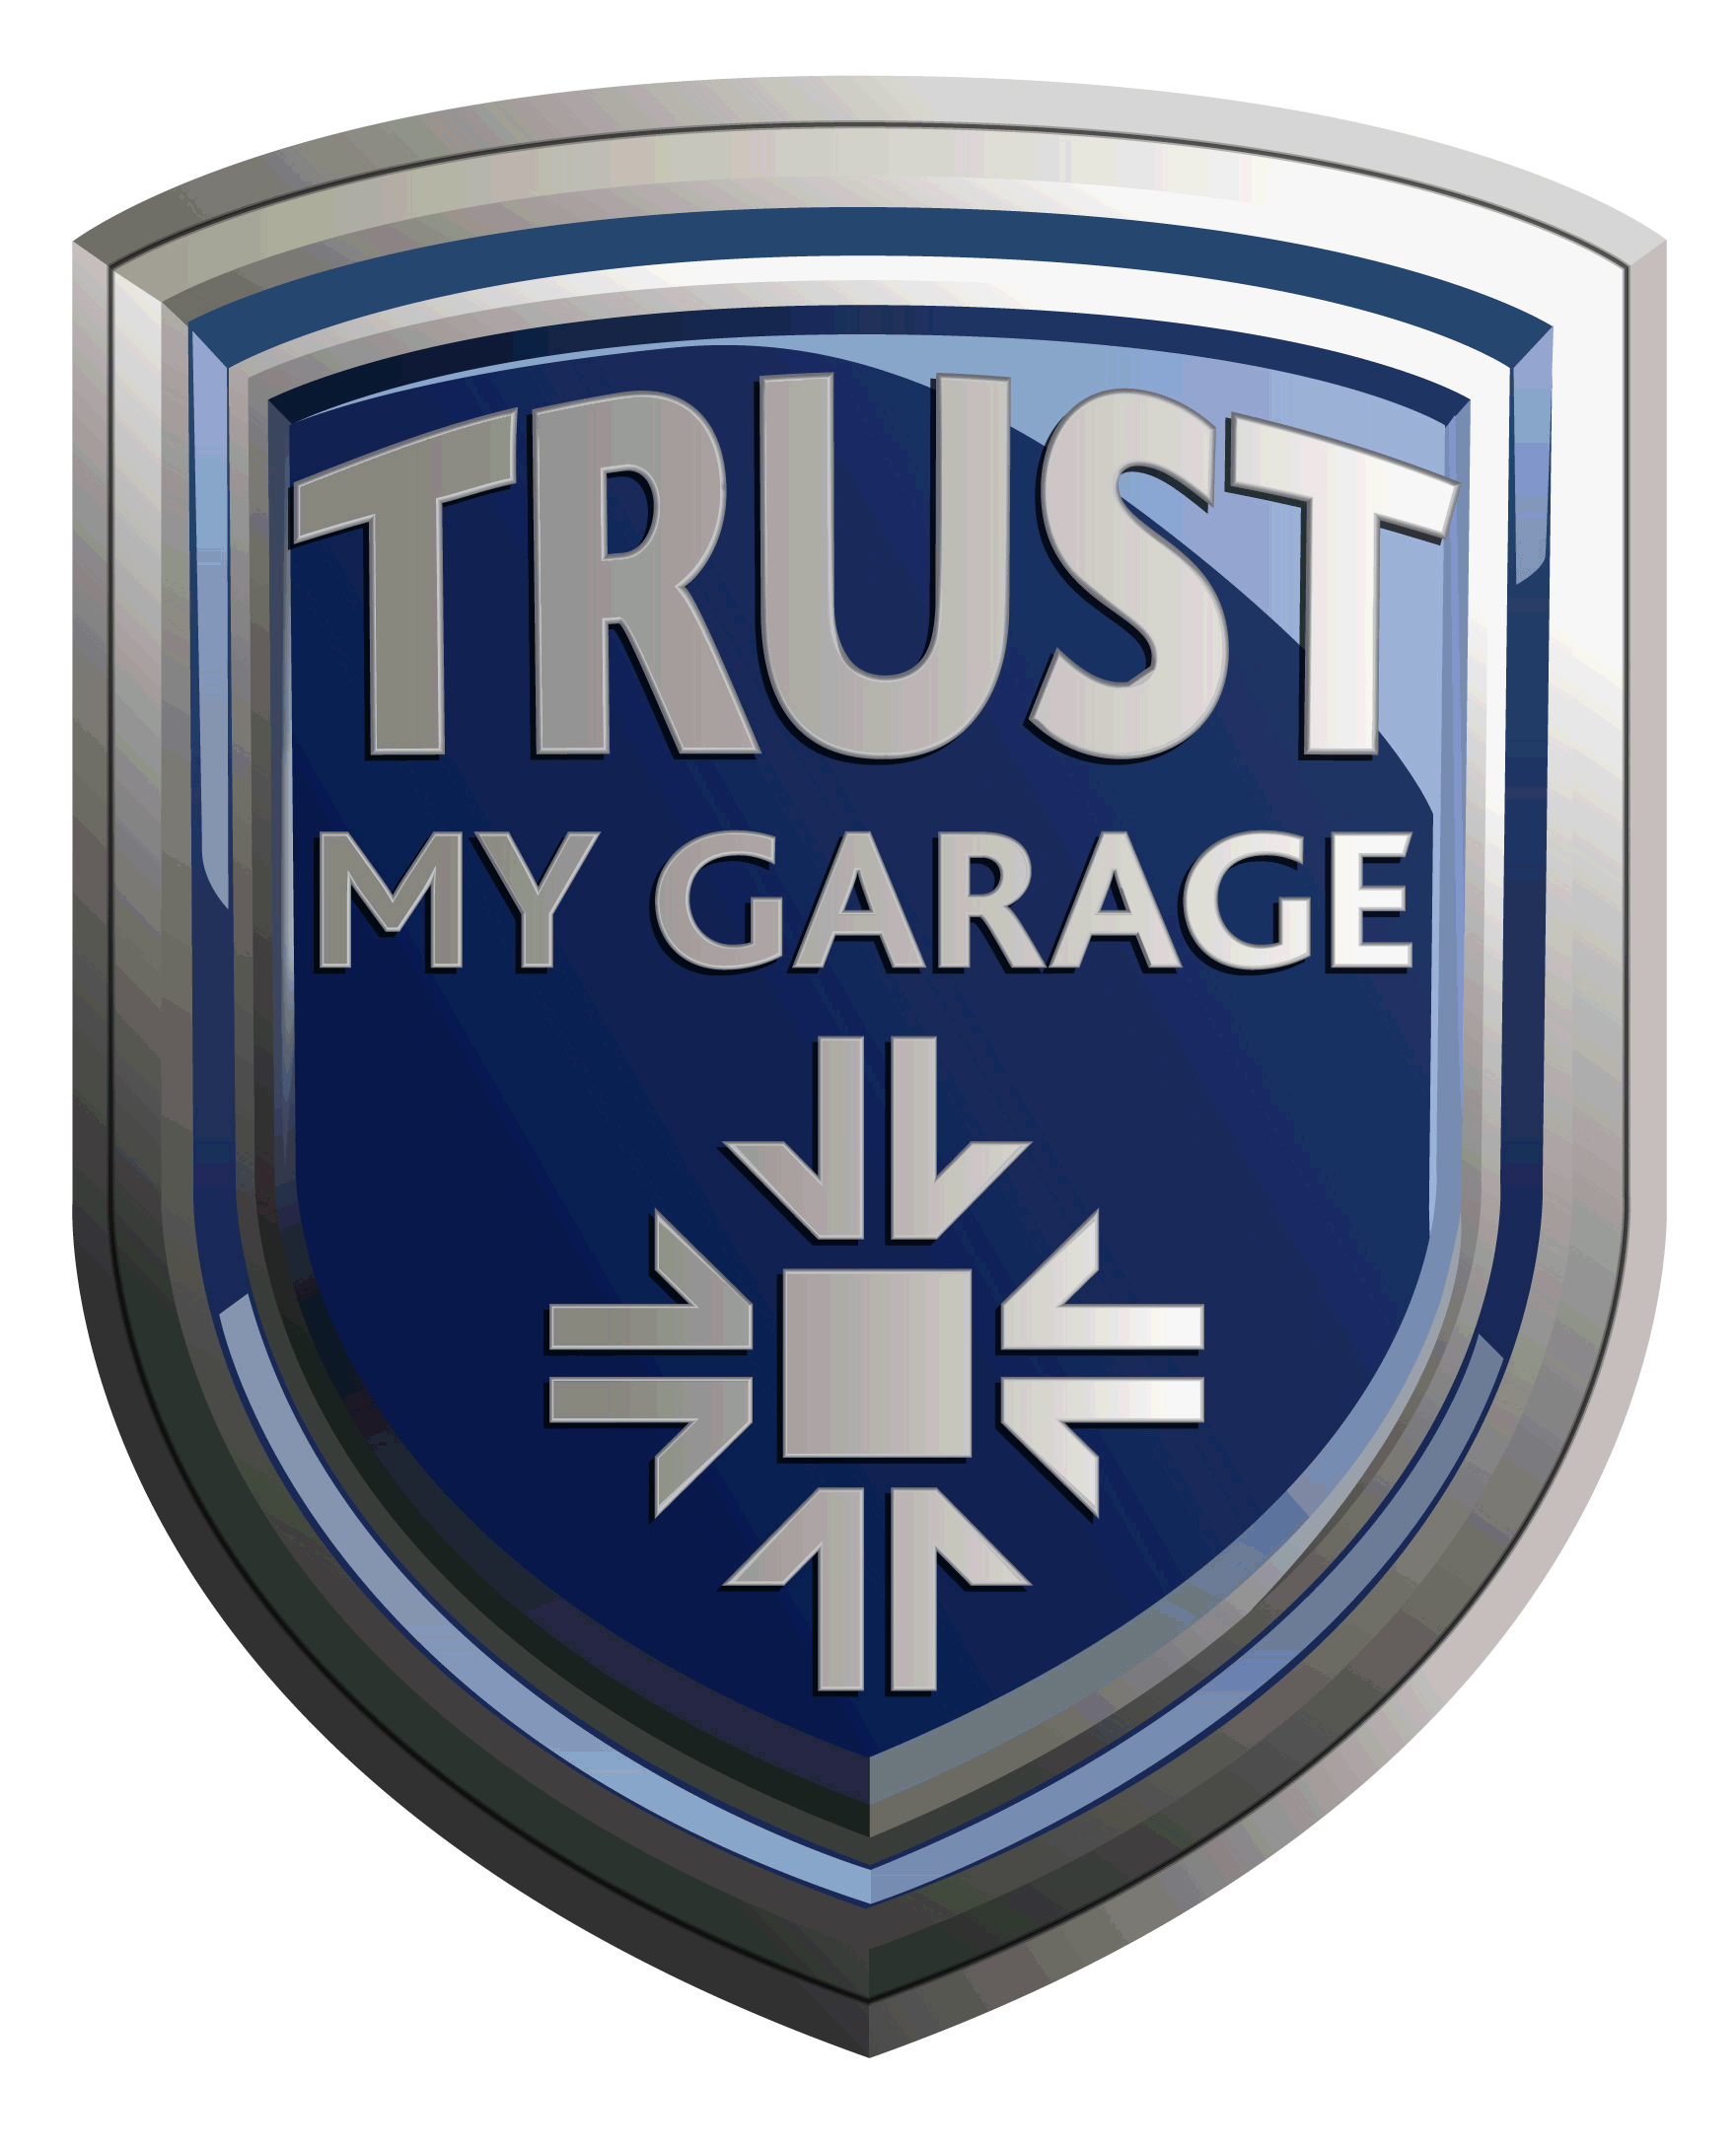 Trust My Garage Logo